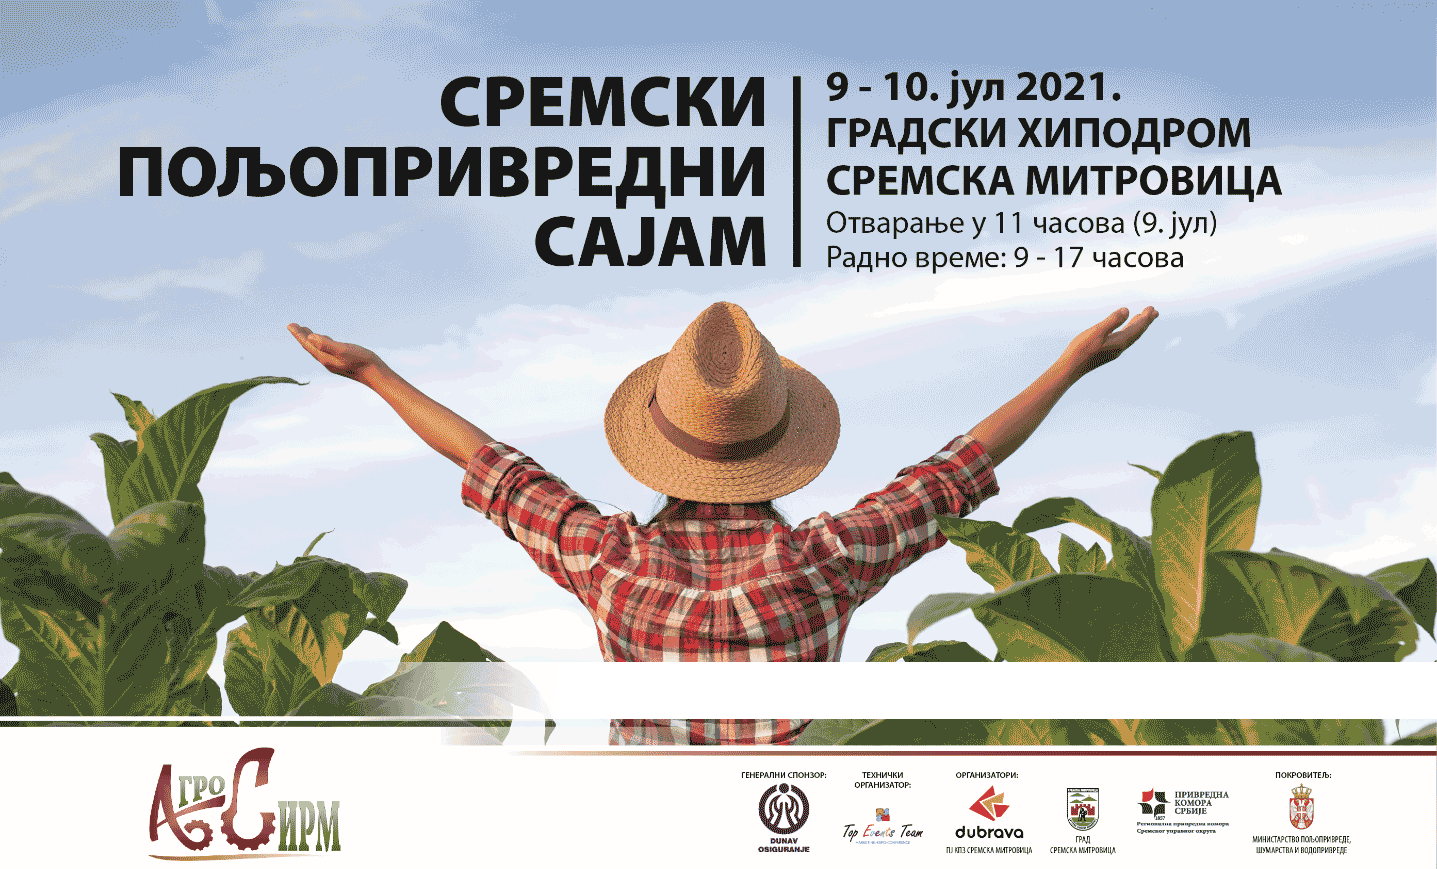 Hrana Produkt ove godine učestvuje na Sremskom poljoprivrednom sajmu- Agro Sirm 2021. Pozivamo sve zainteresovane da posete naš štand. Vidimo se 9. i 10. jula na Hipodromu. Dobrodošli.